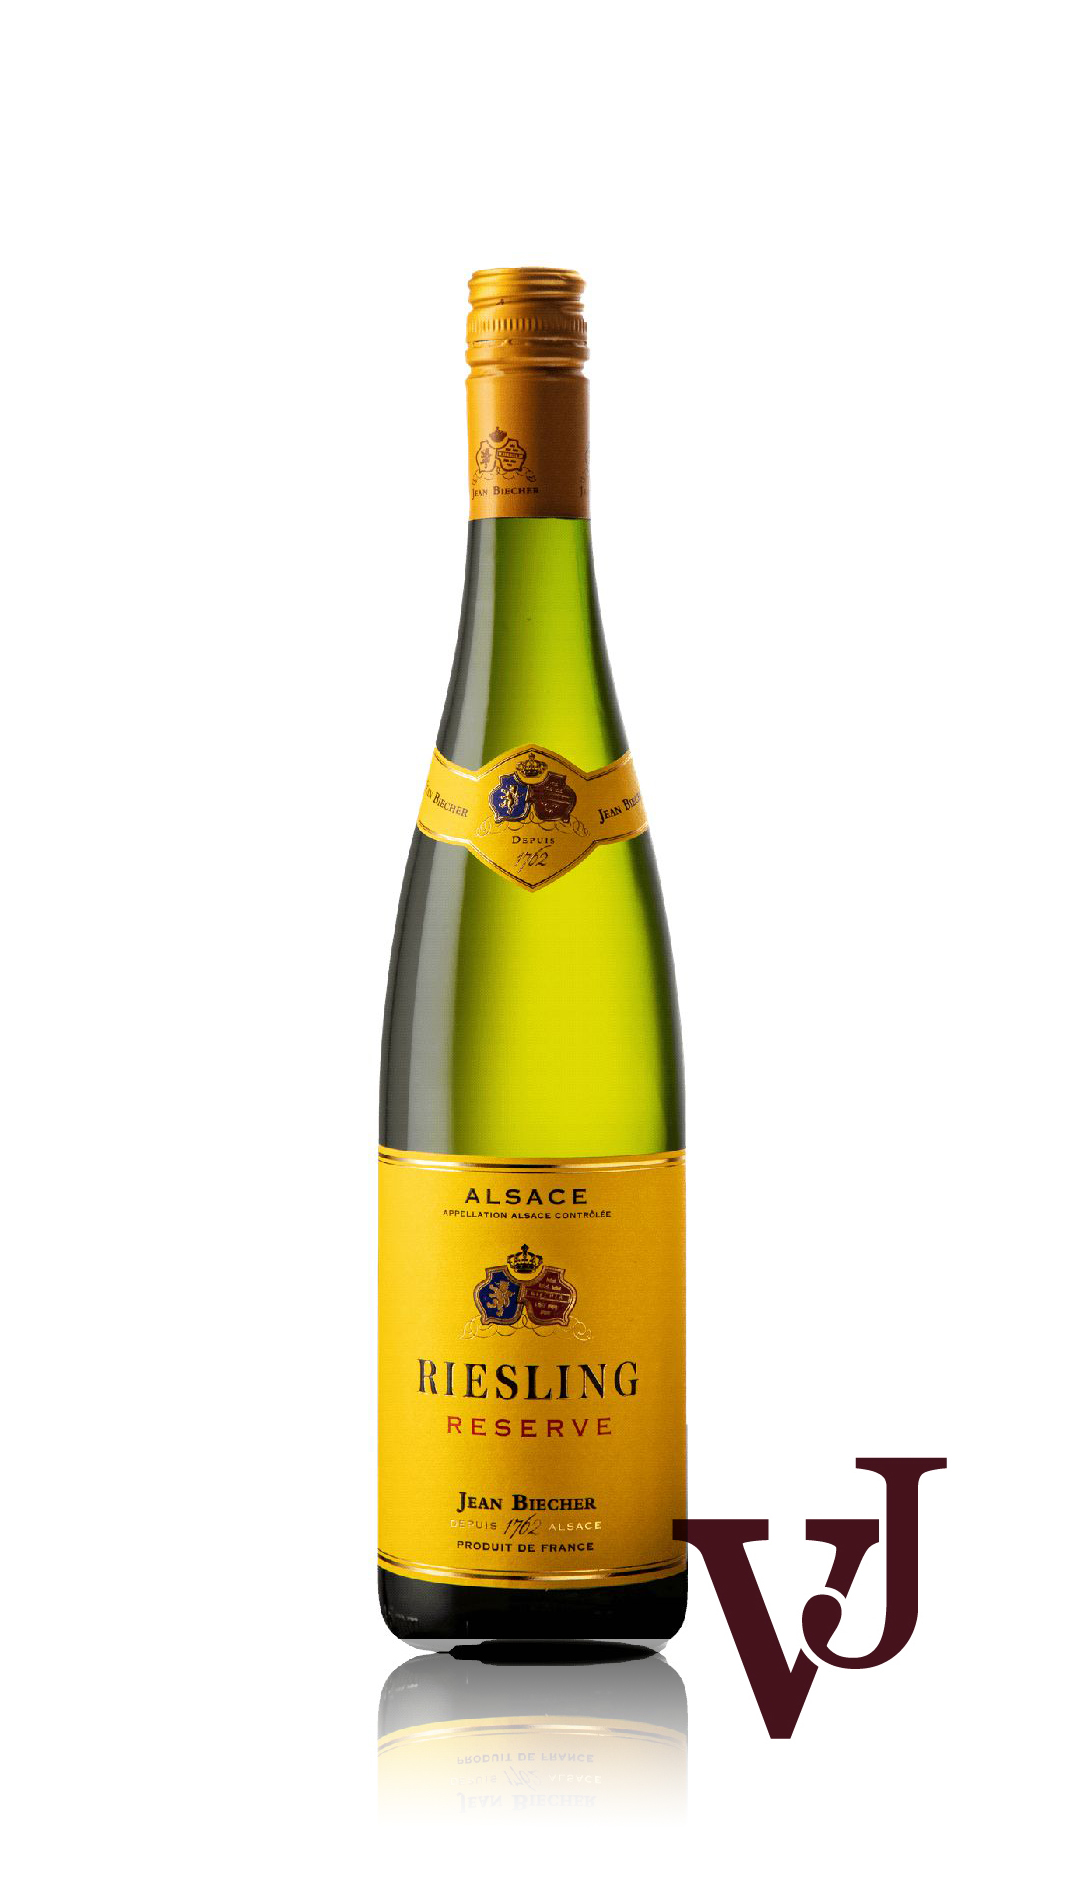 Vitt Vin - Biecher Riesling Réserve artikel nummer 219801 från producenten Jean Biecher från området Frankrike